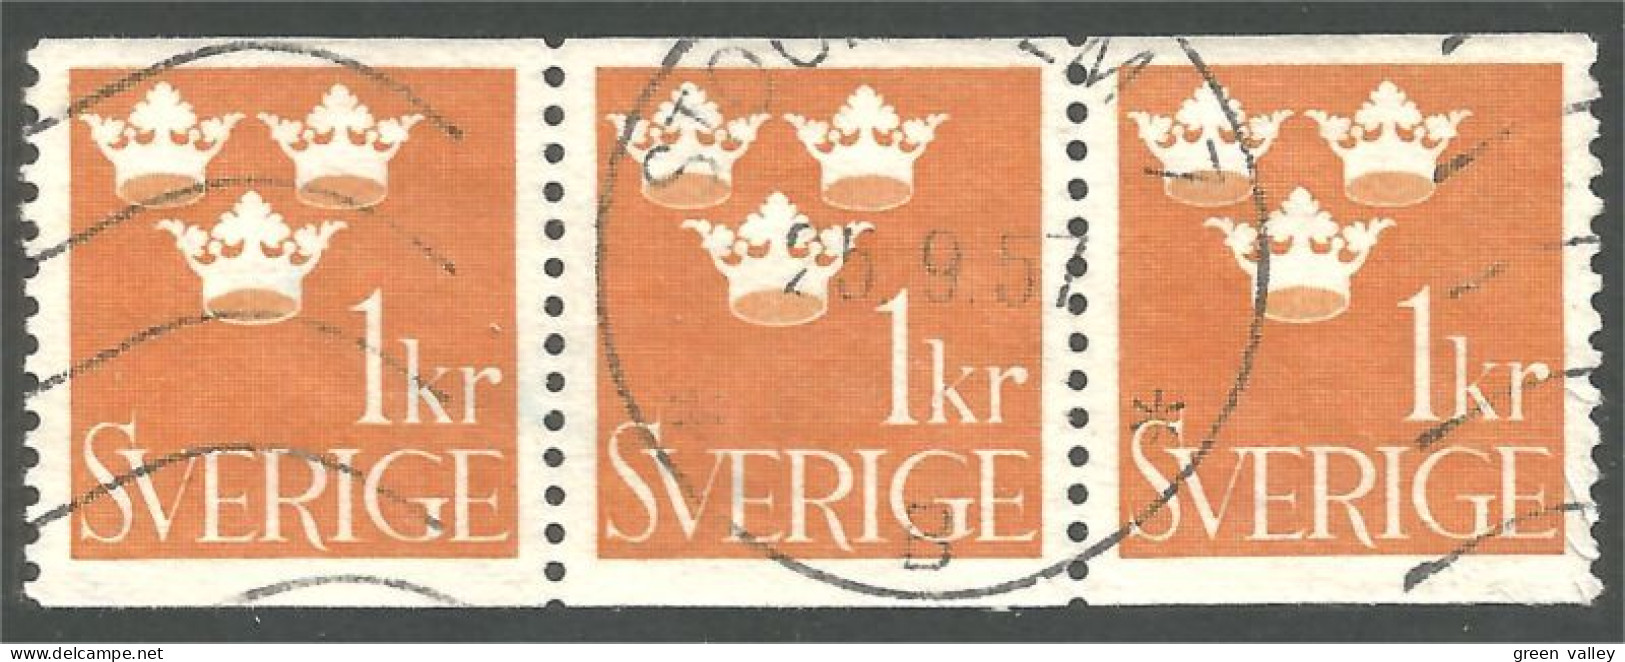 840 Sweden 1939 Trois Couronnes Three Crowns 1kr Orange Bande Strip 3 (SWE-426) - Gebruikt